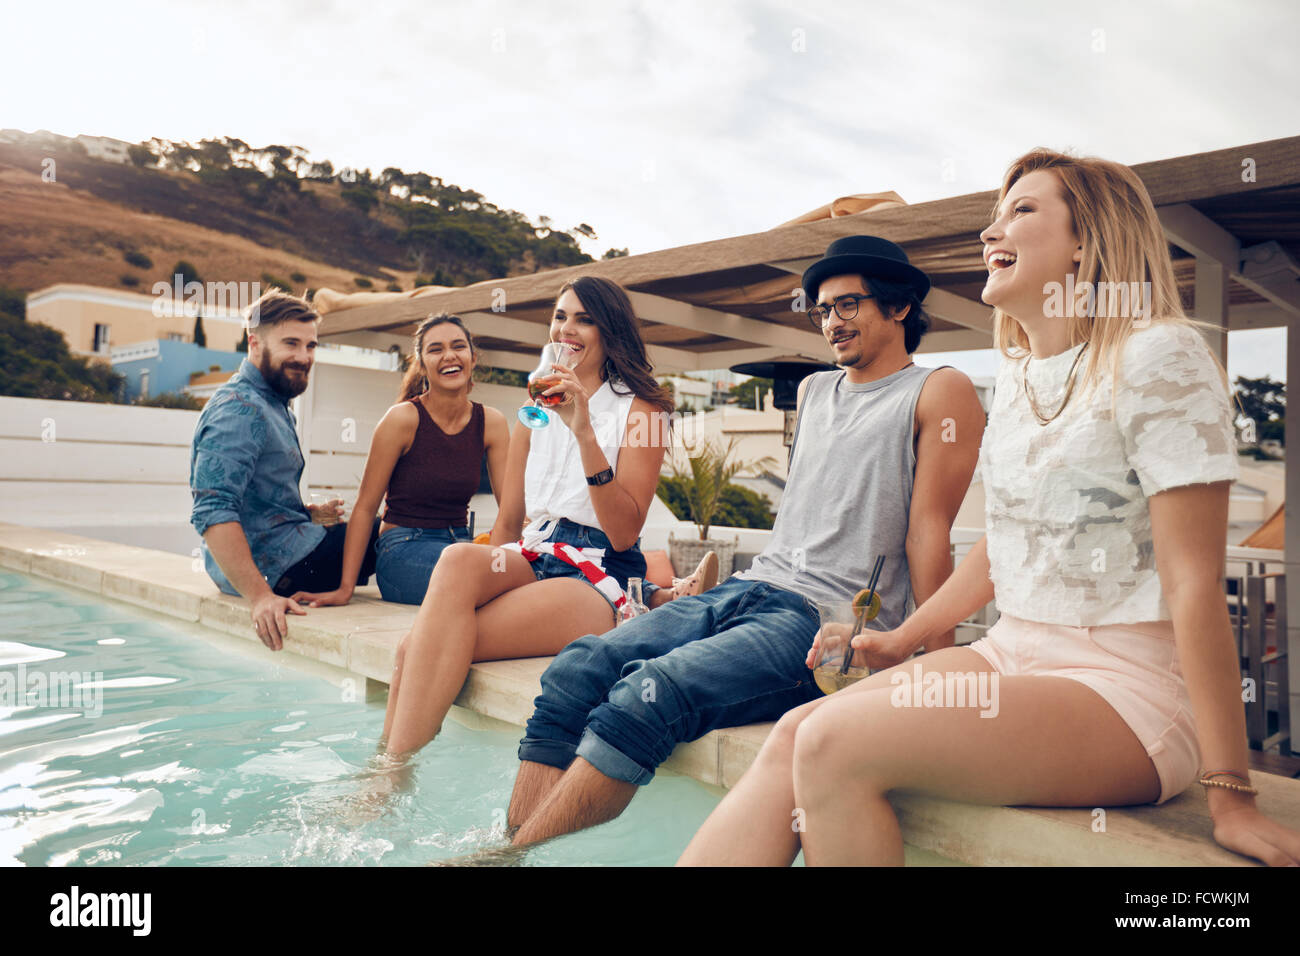 Junge Leute trinken Cocktails am Pool während der Partei. Junge Freunde lachen während der Sitzung von einem Schwimmbad. Männer und Frauen Stockfoto